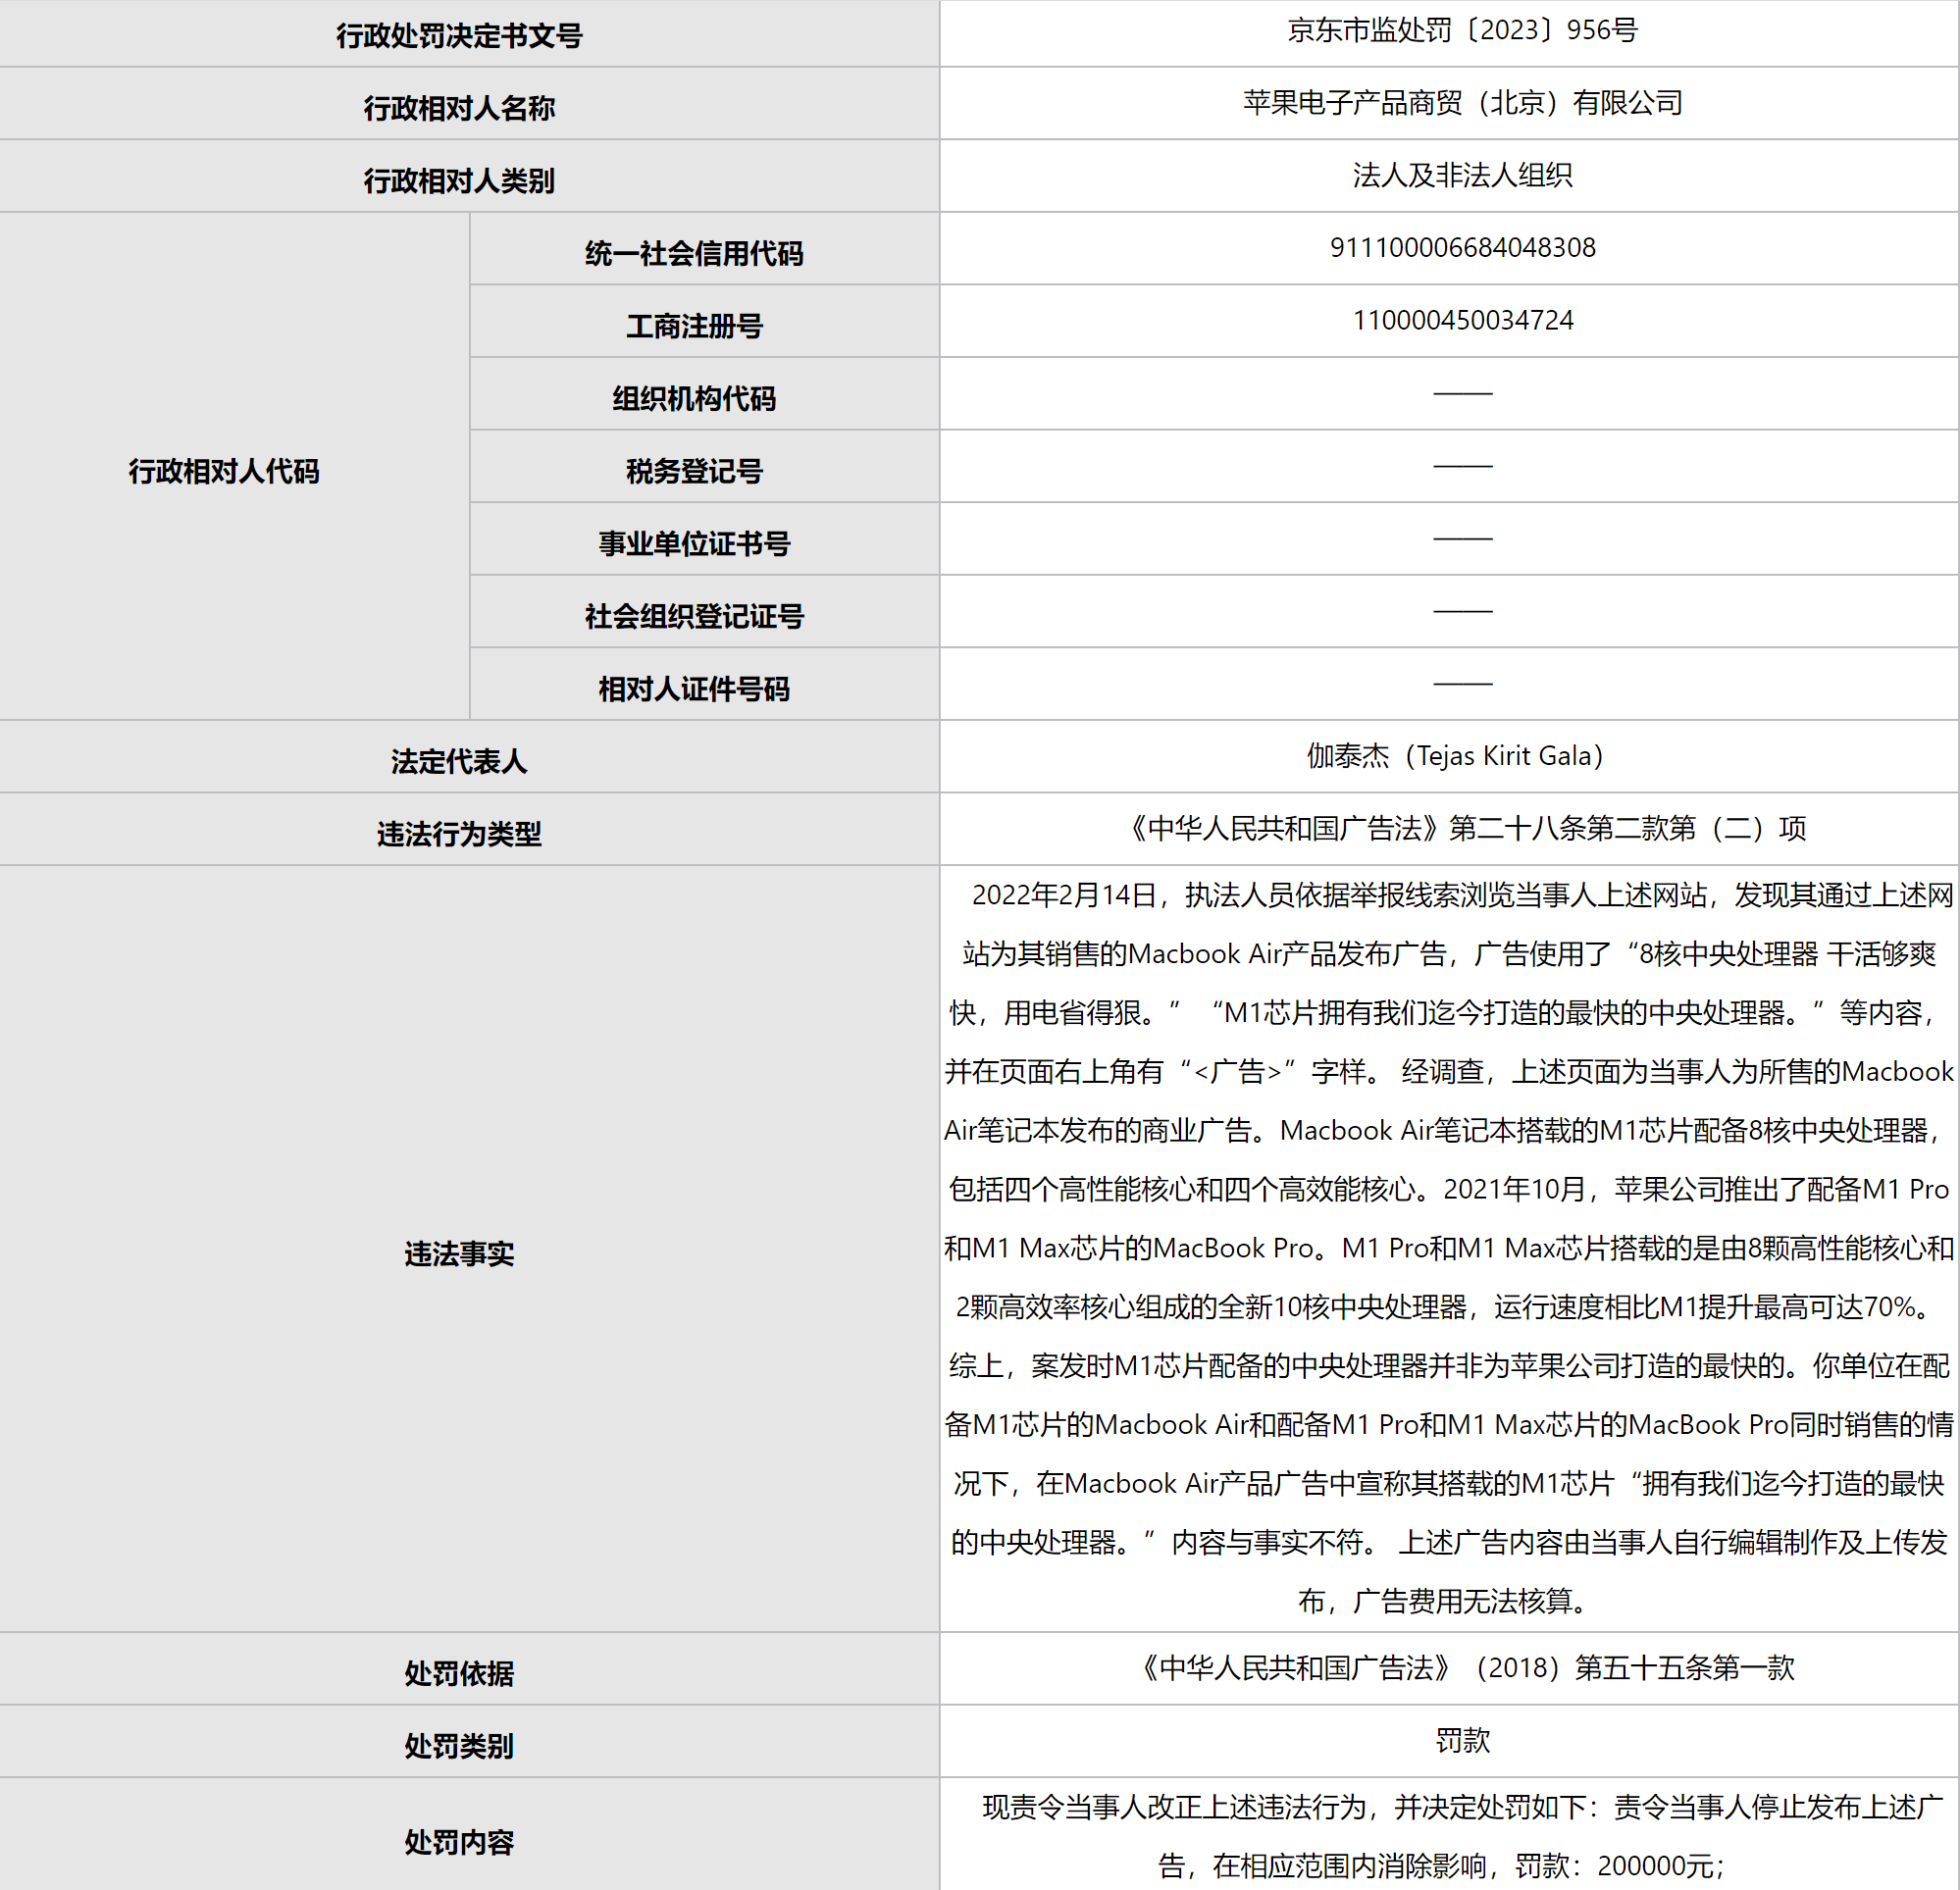 苹果果支布实假告乌 被北京监禁部分止政处分20万元